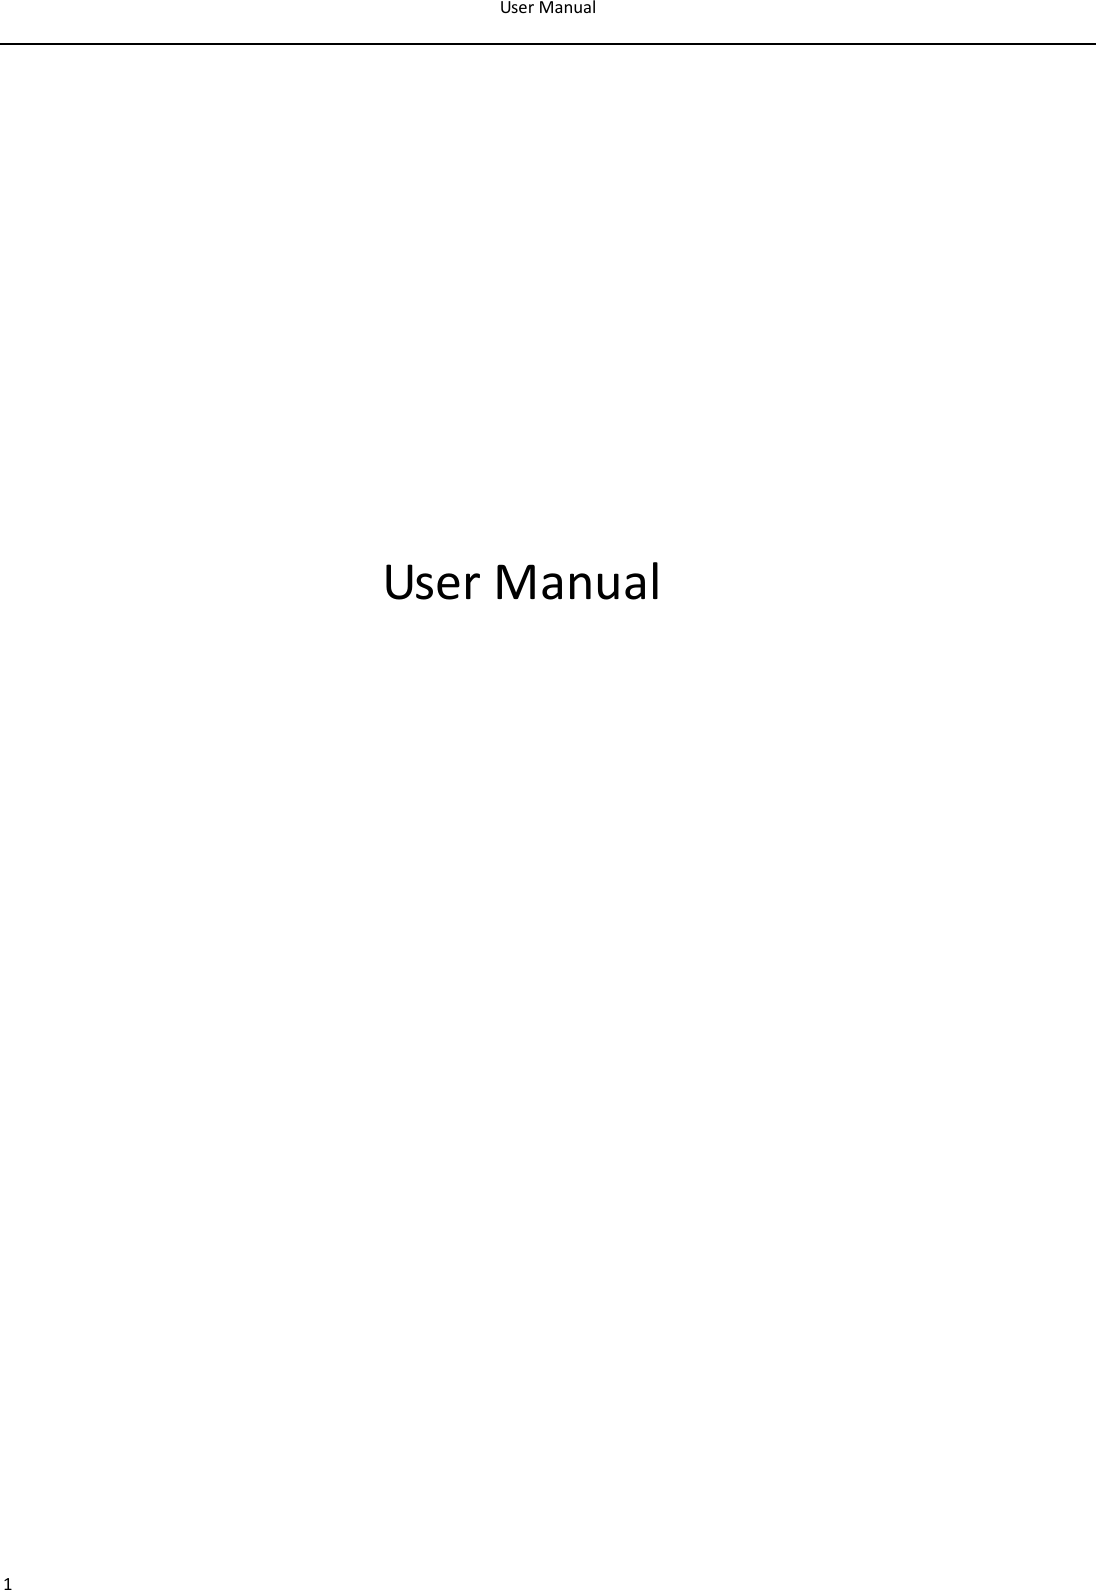 UserManual1UserManual